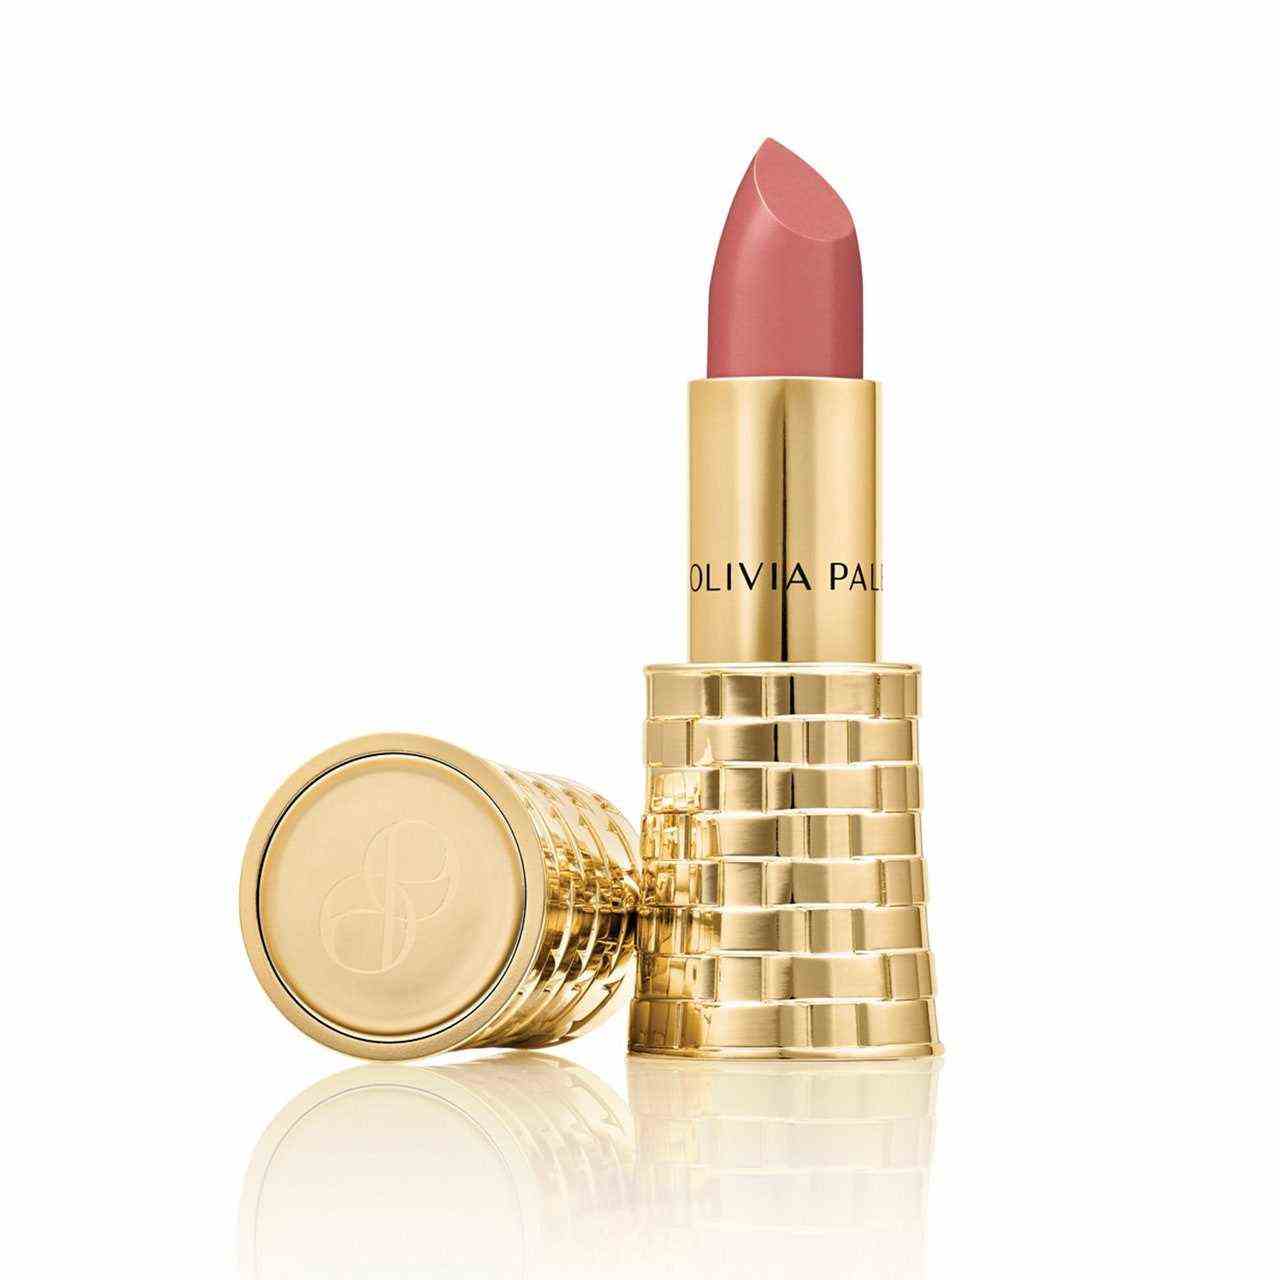 Olivia Palermo Beauty Matter Lippenstift in Rosebud auf weißem Hintergrund